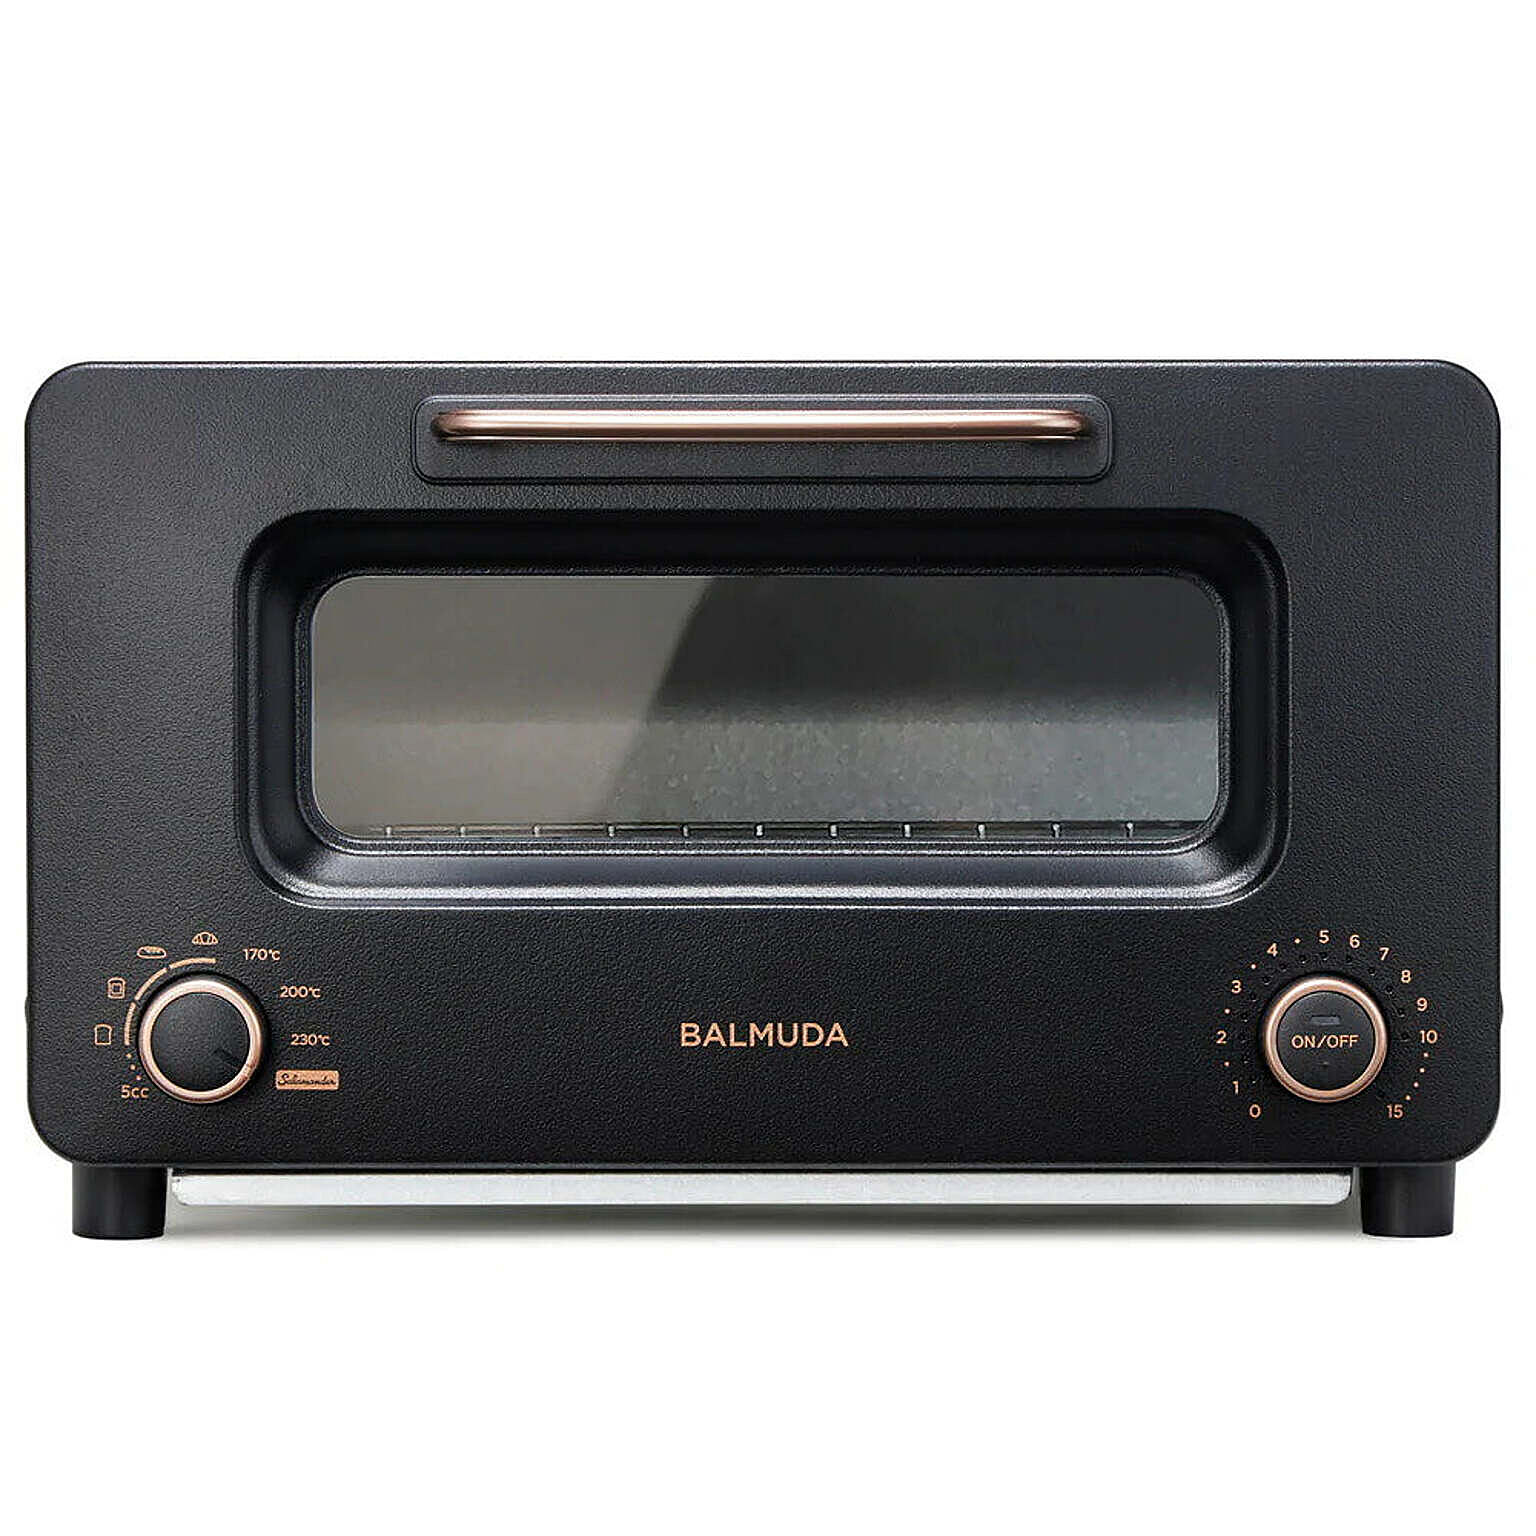 BALMUDA / The Toaster Pro